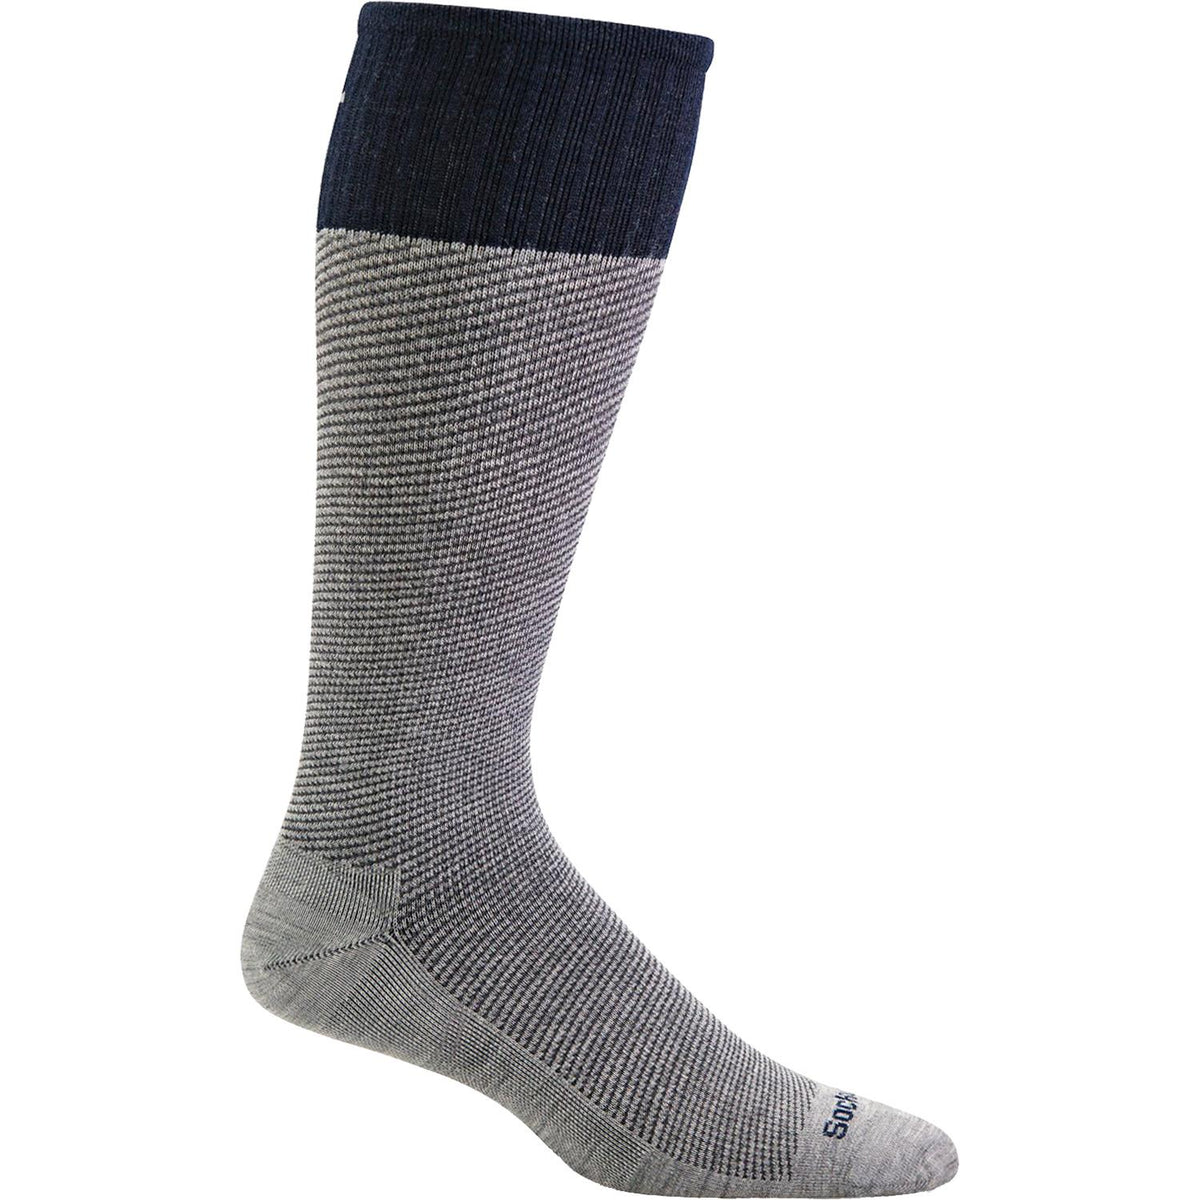 Men's Sockwell Bart Knee High Socks 15-20 mmHg Light Grey – Footwear etc.